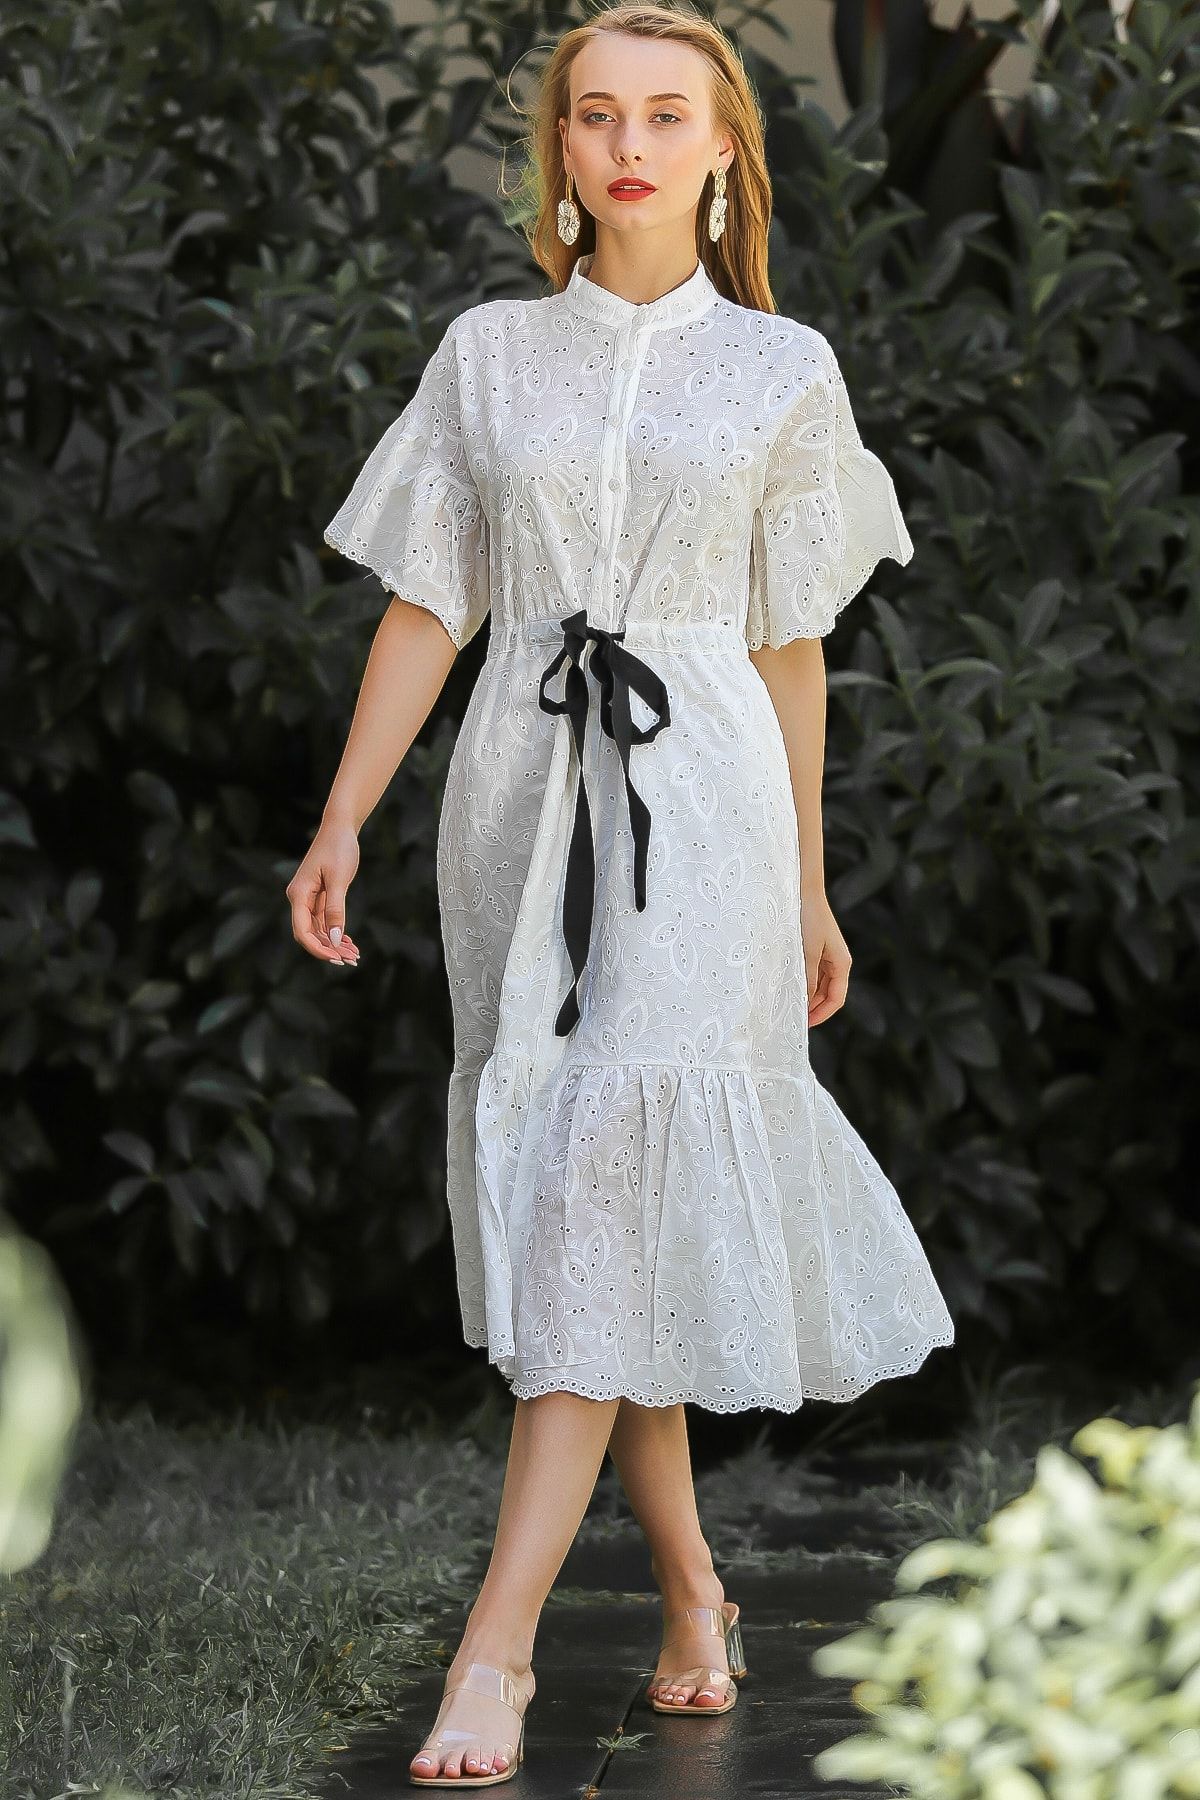 Chiccy Kadın Beyaz Vintage Fisto Kumaş Kuşaklı Düğme Detay Etek Ucu Fırfır Astarlı Elbise M10160000EL96448